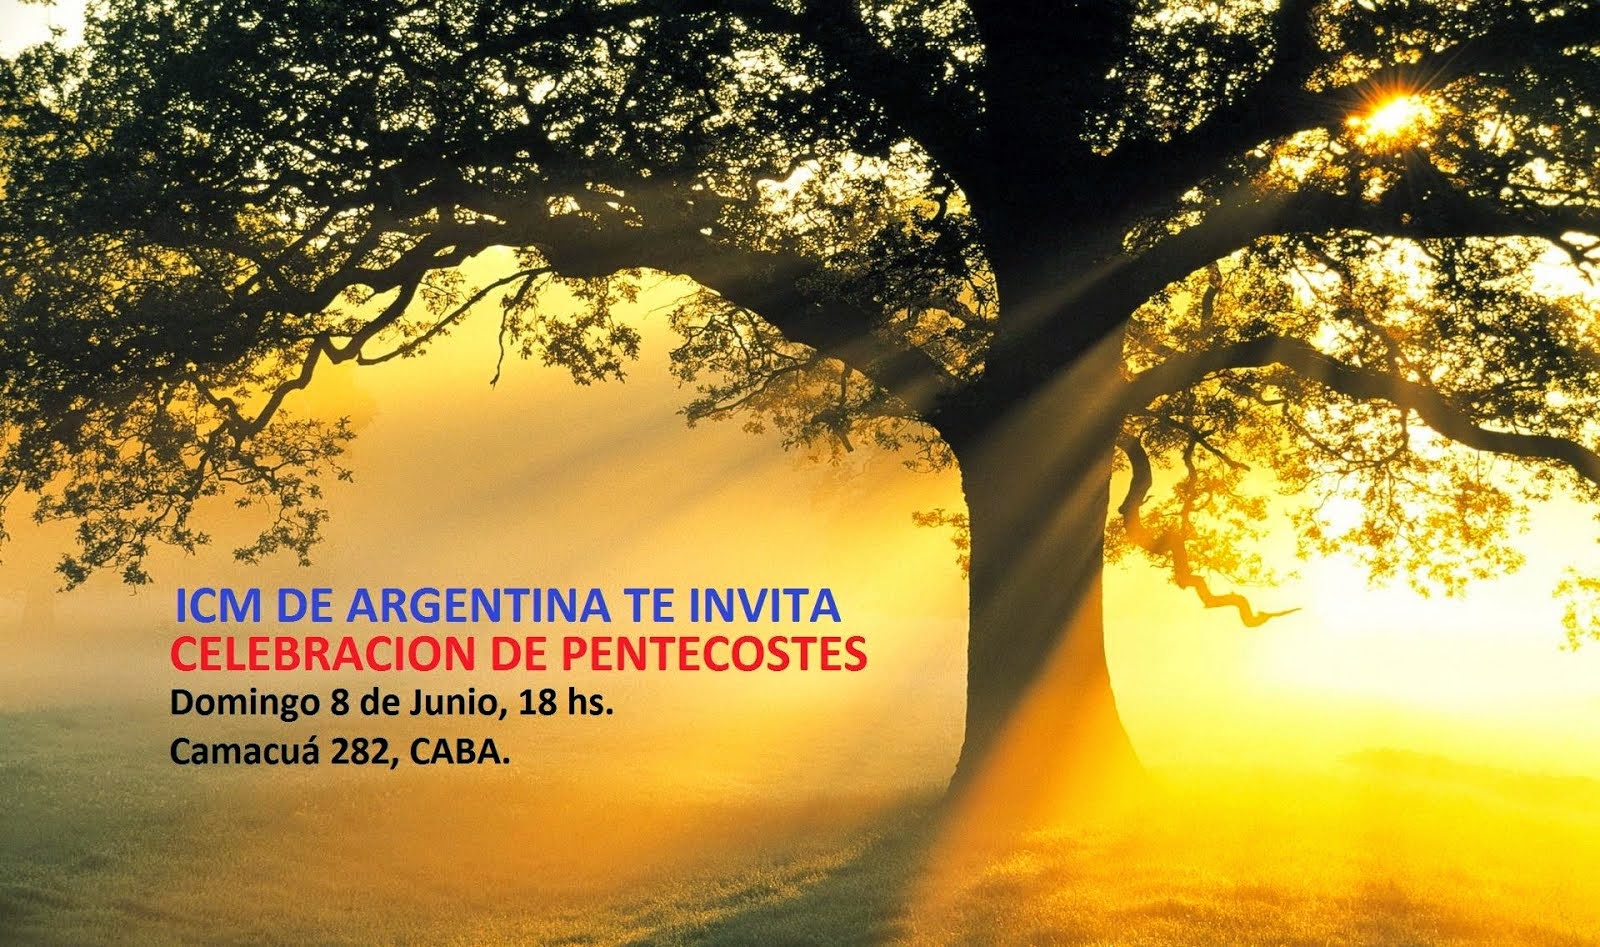 Zona Centro Buenos Aires, te invita a la Celebracion Pentecostes!!!